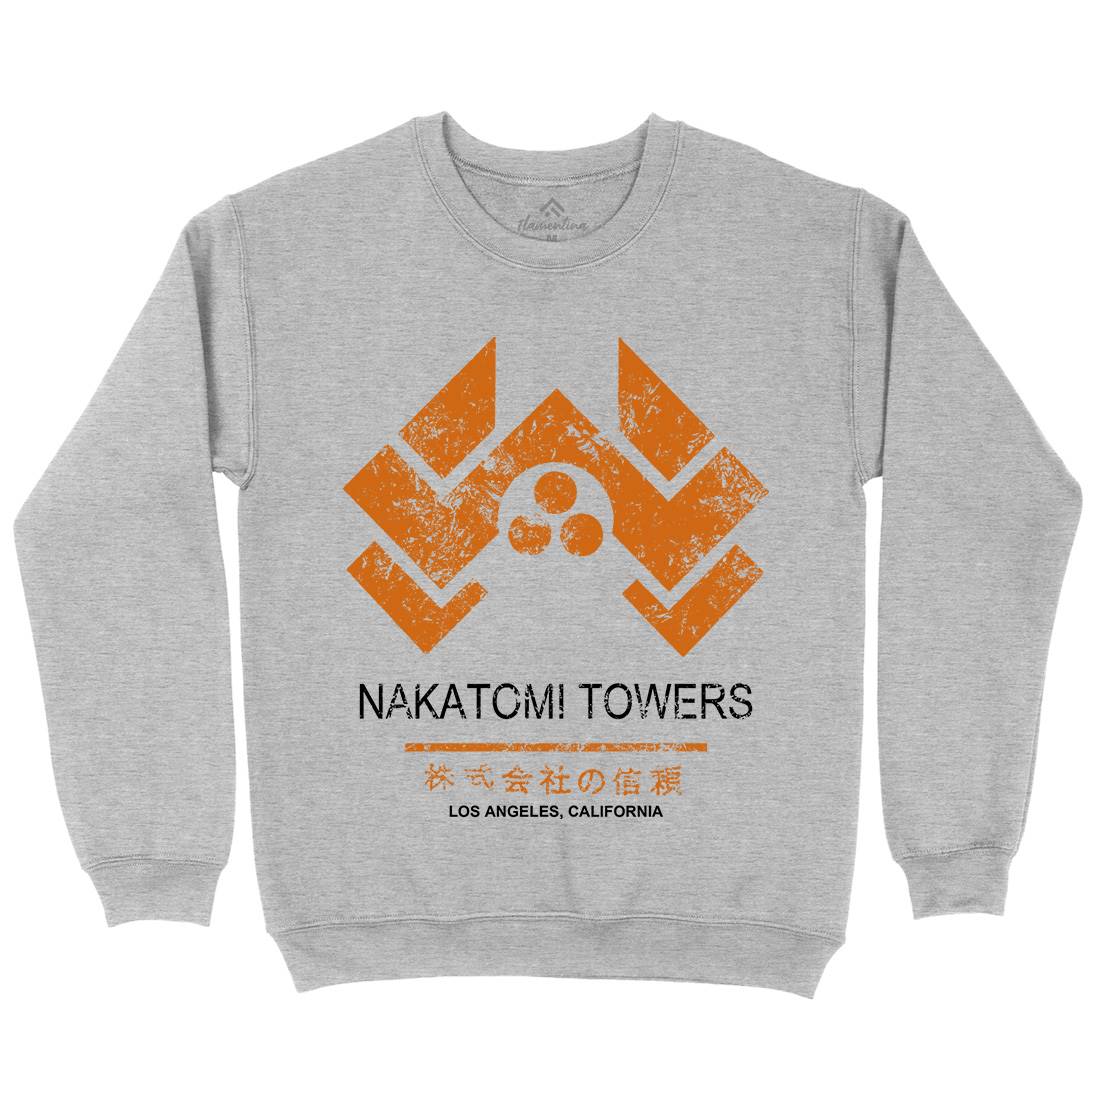 Nakatomi Tower Kids Crew Neck Sweatshirt Retro D430